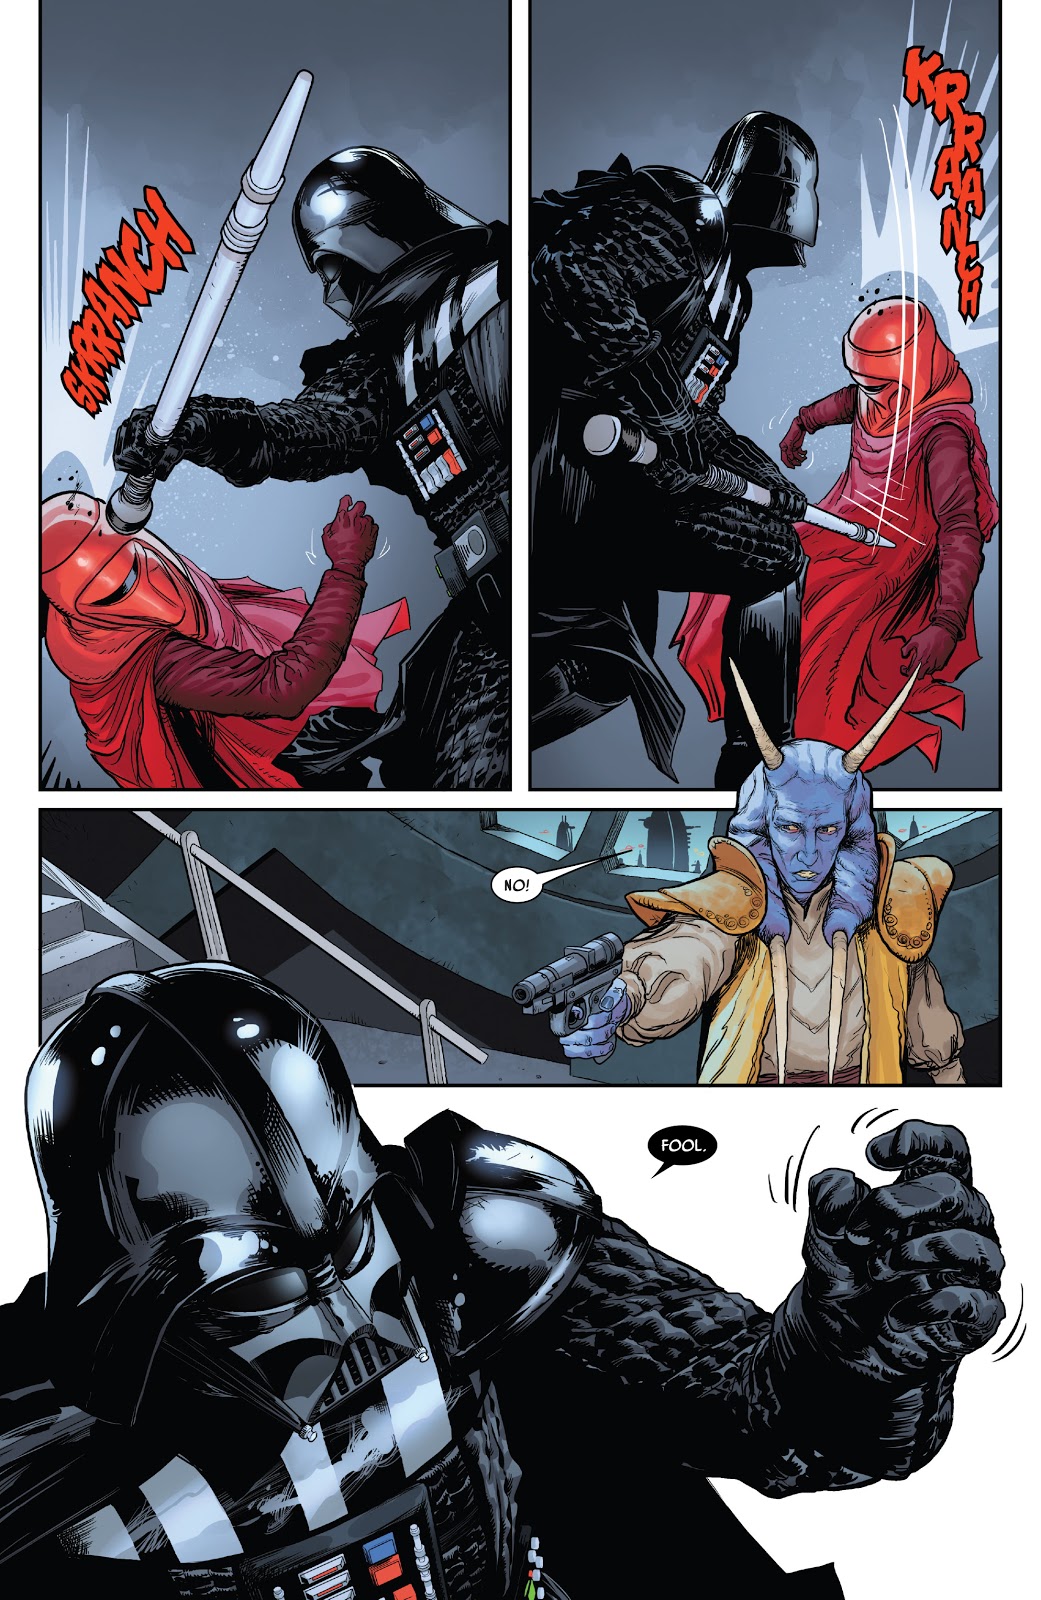 Darth Vader Force Chokes Mas Amedda